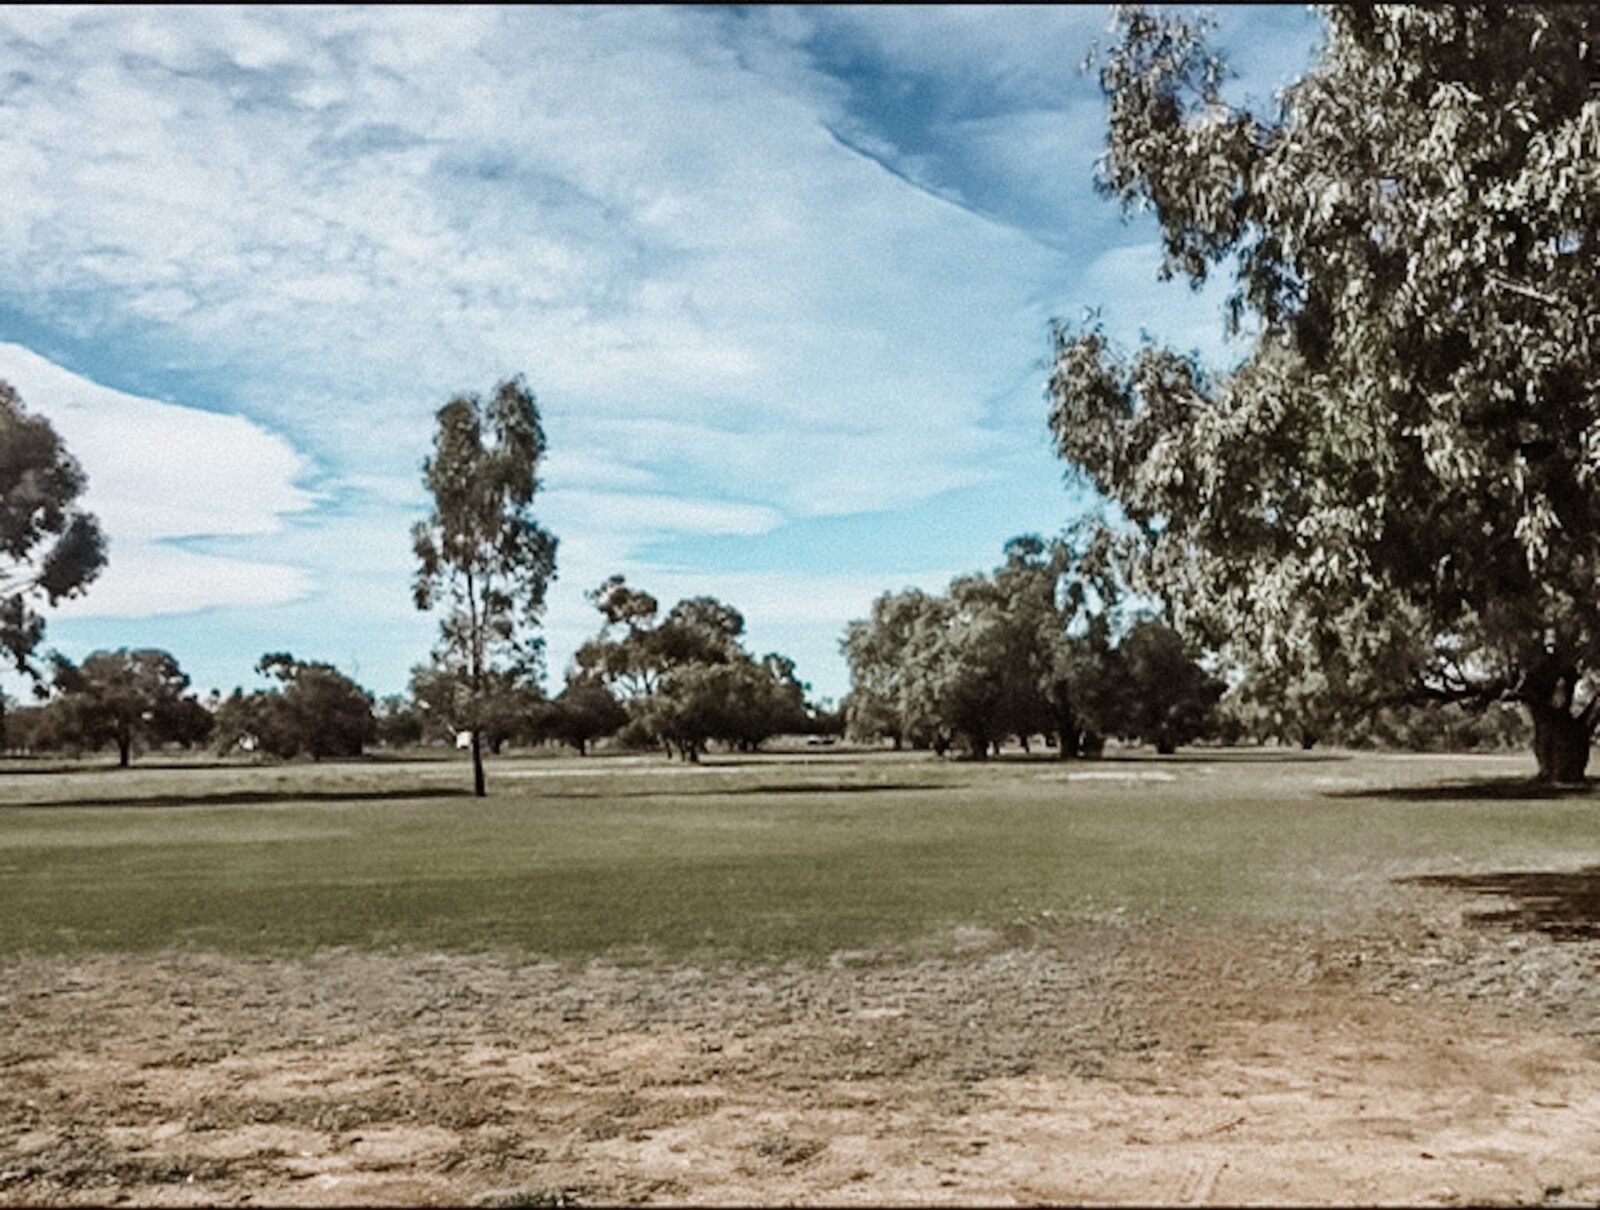 Darling River Golf Club